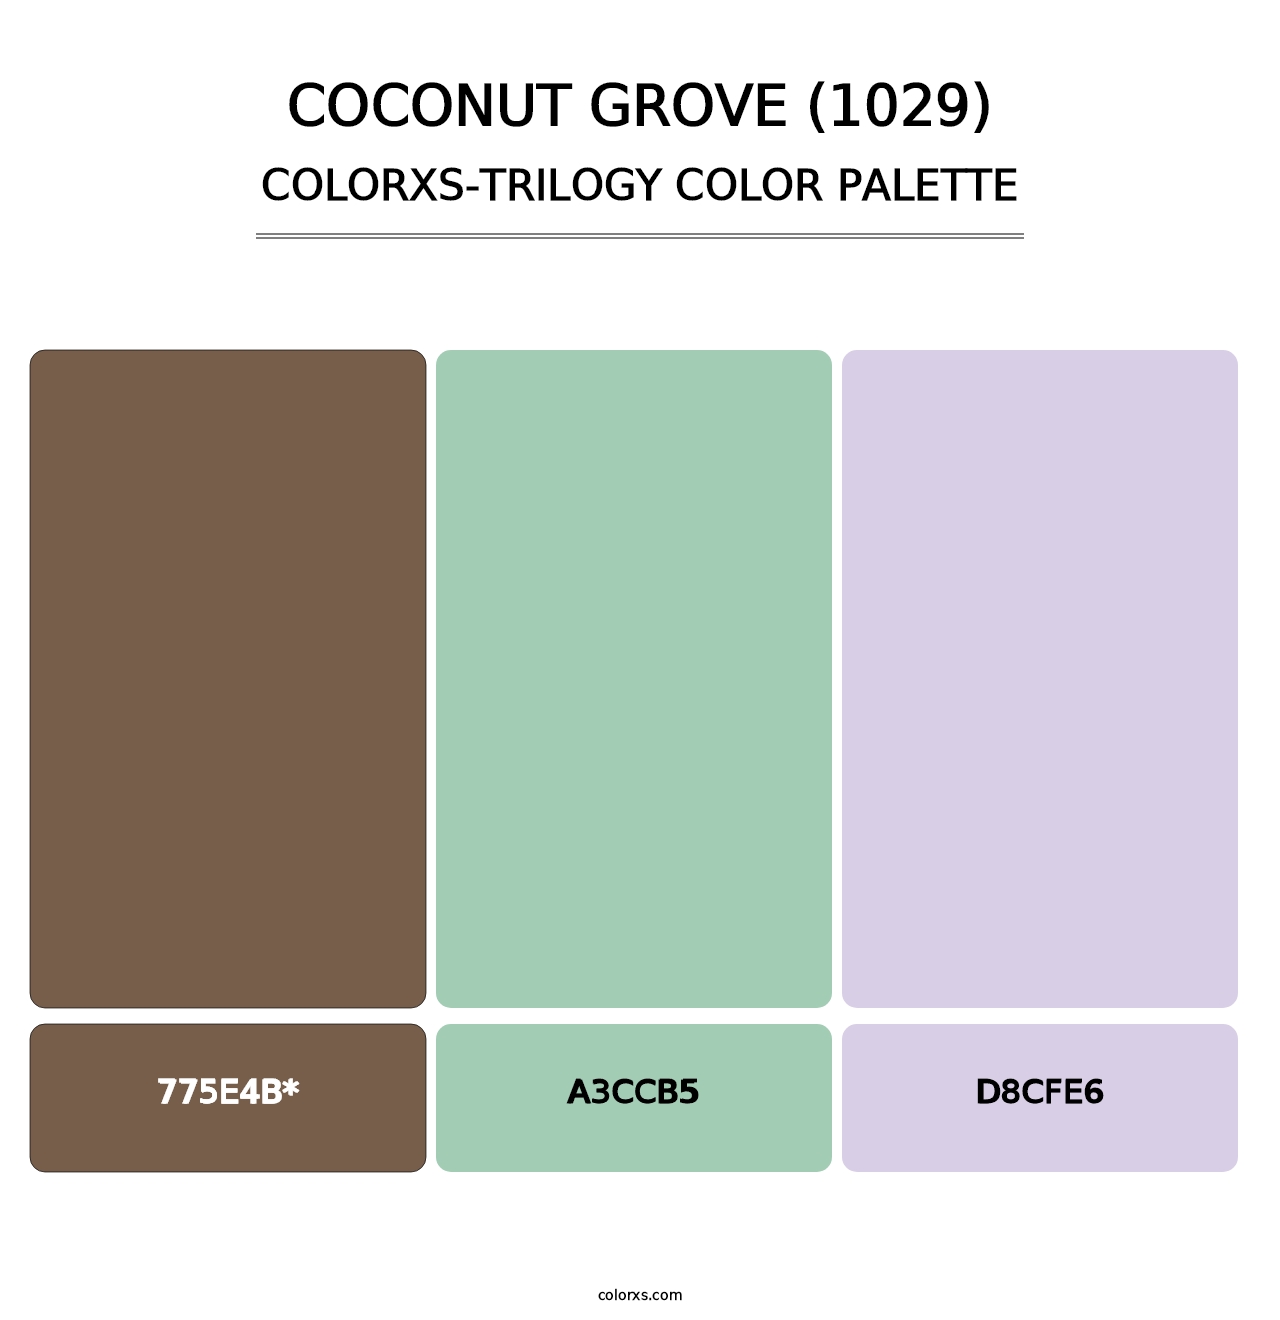 Coconut Grove (1029) - Colorxs Trilogy Palette